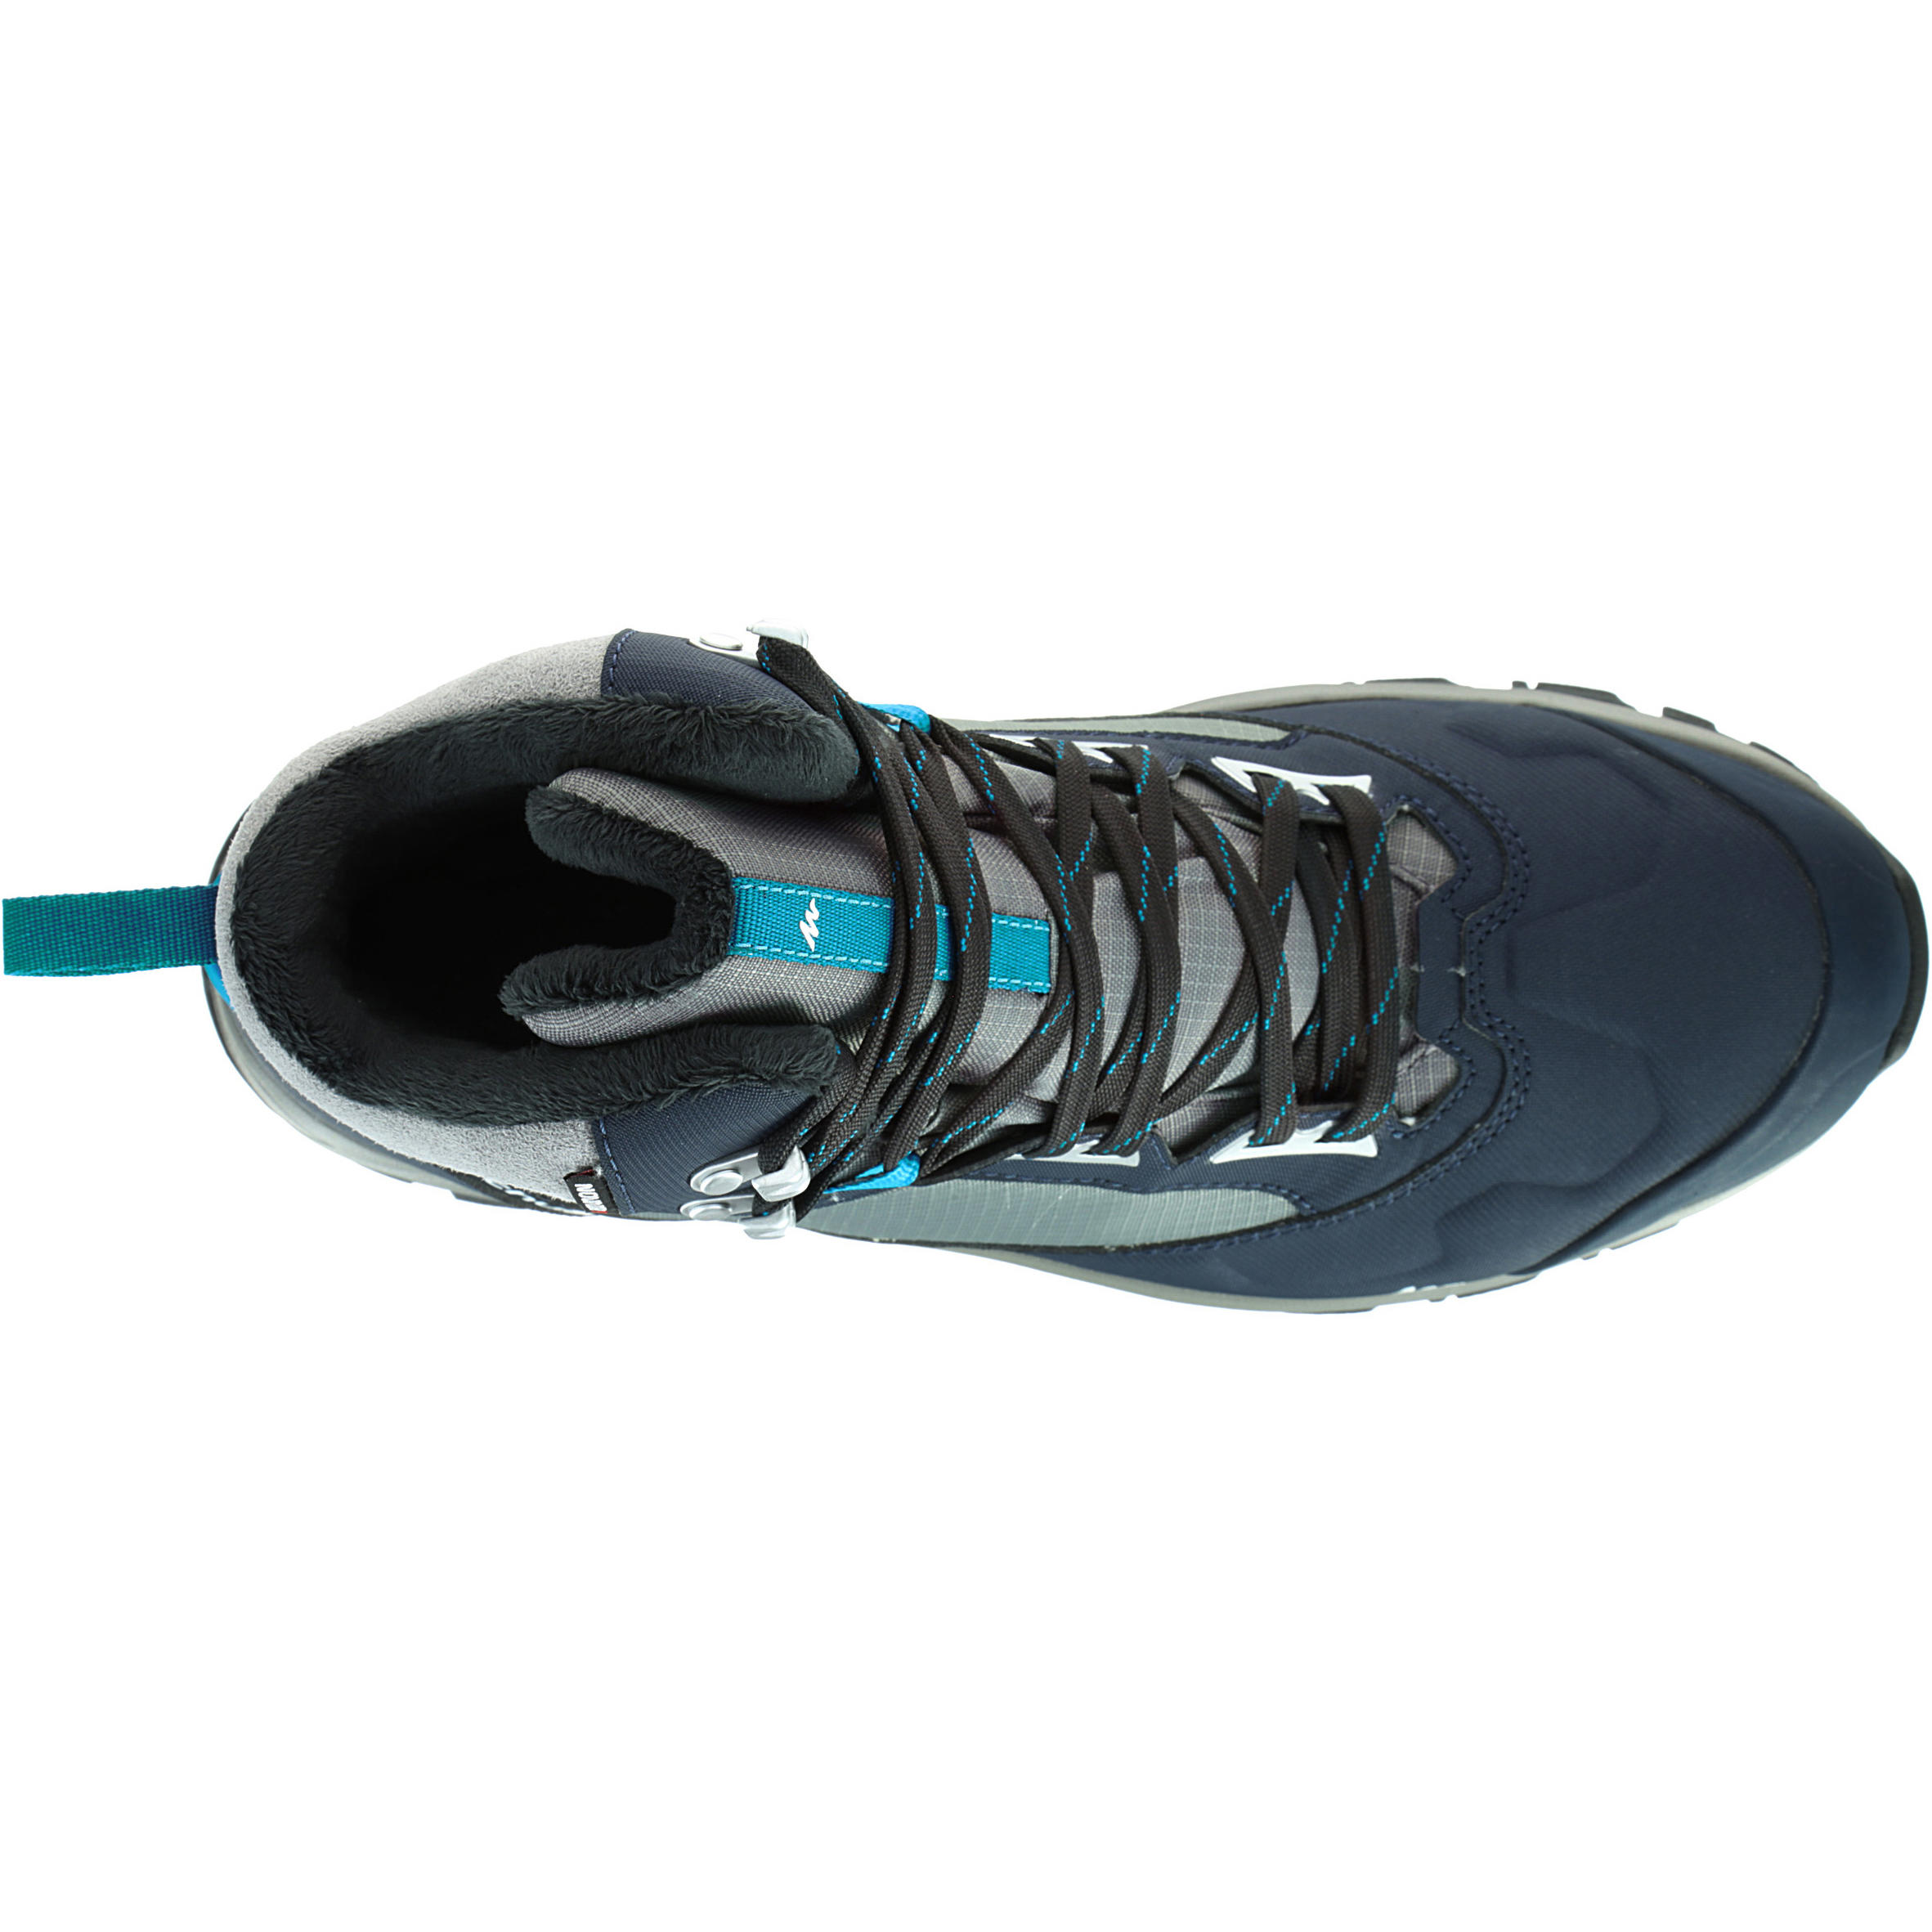 Forclaz 500 Warm Waterproof Men's Hiking Boots - Blue 7/15